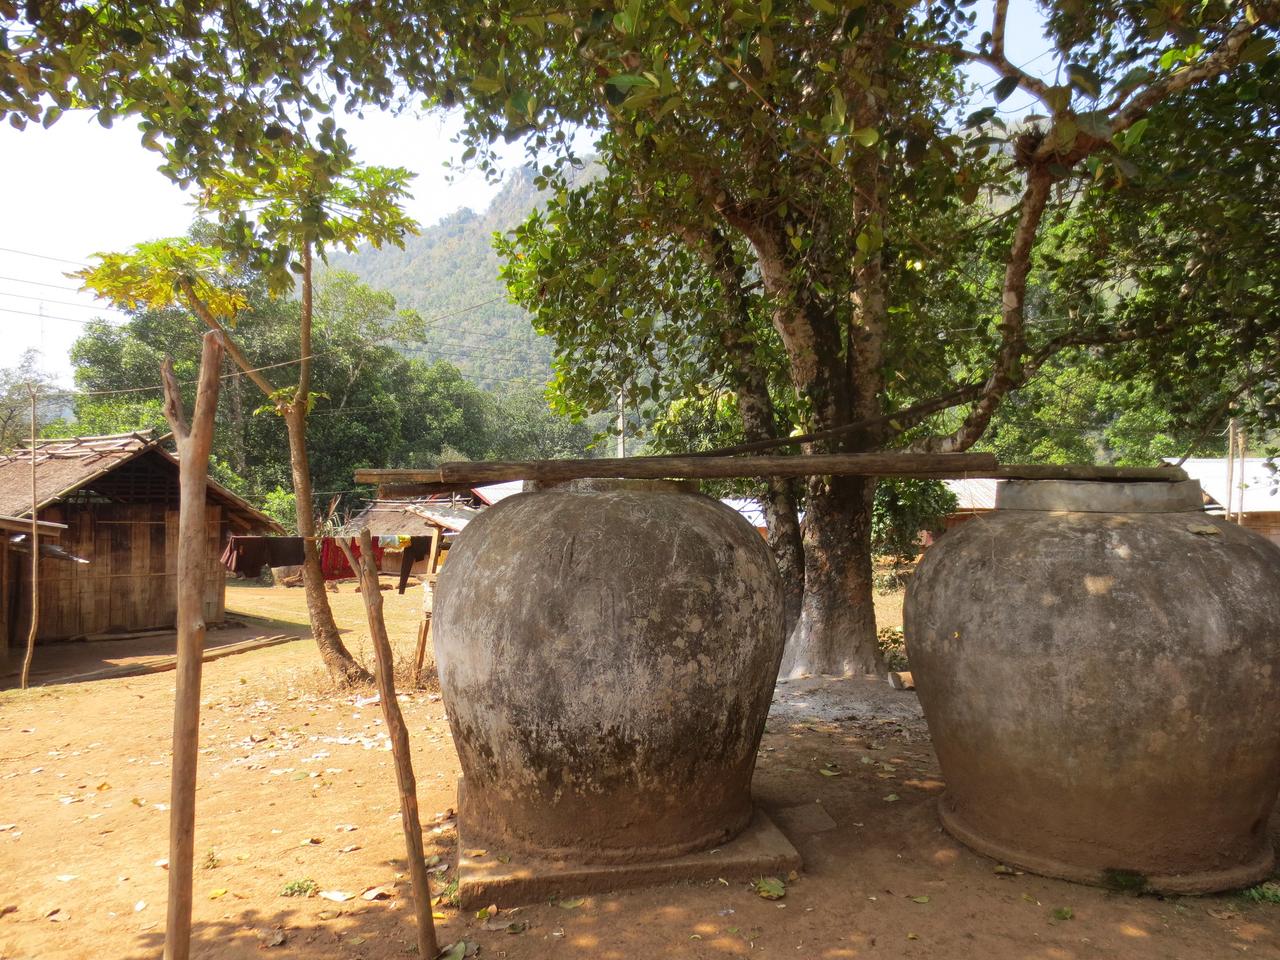 Almacenamiento de arroz en Laos